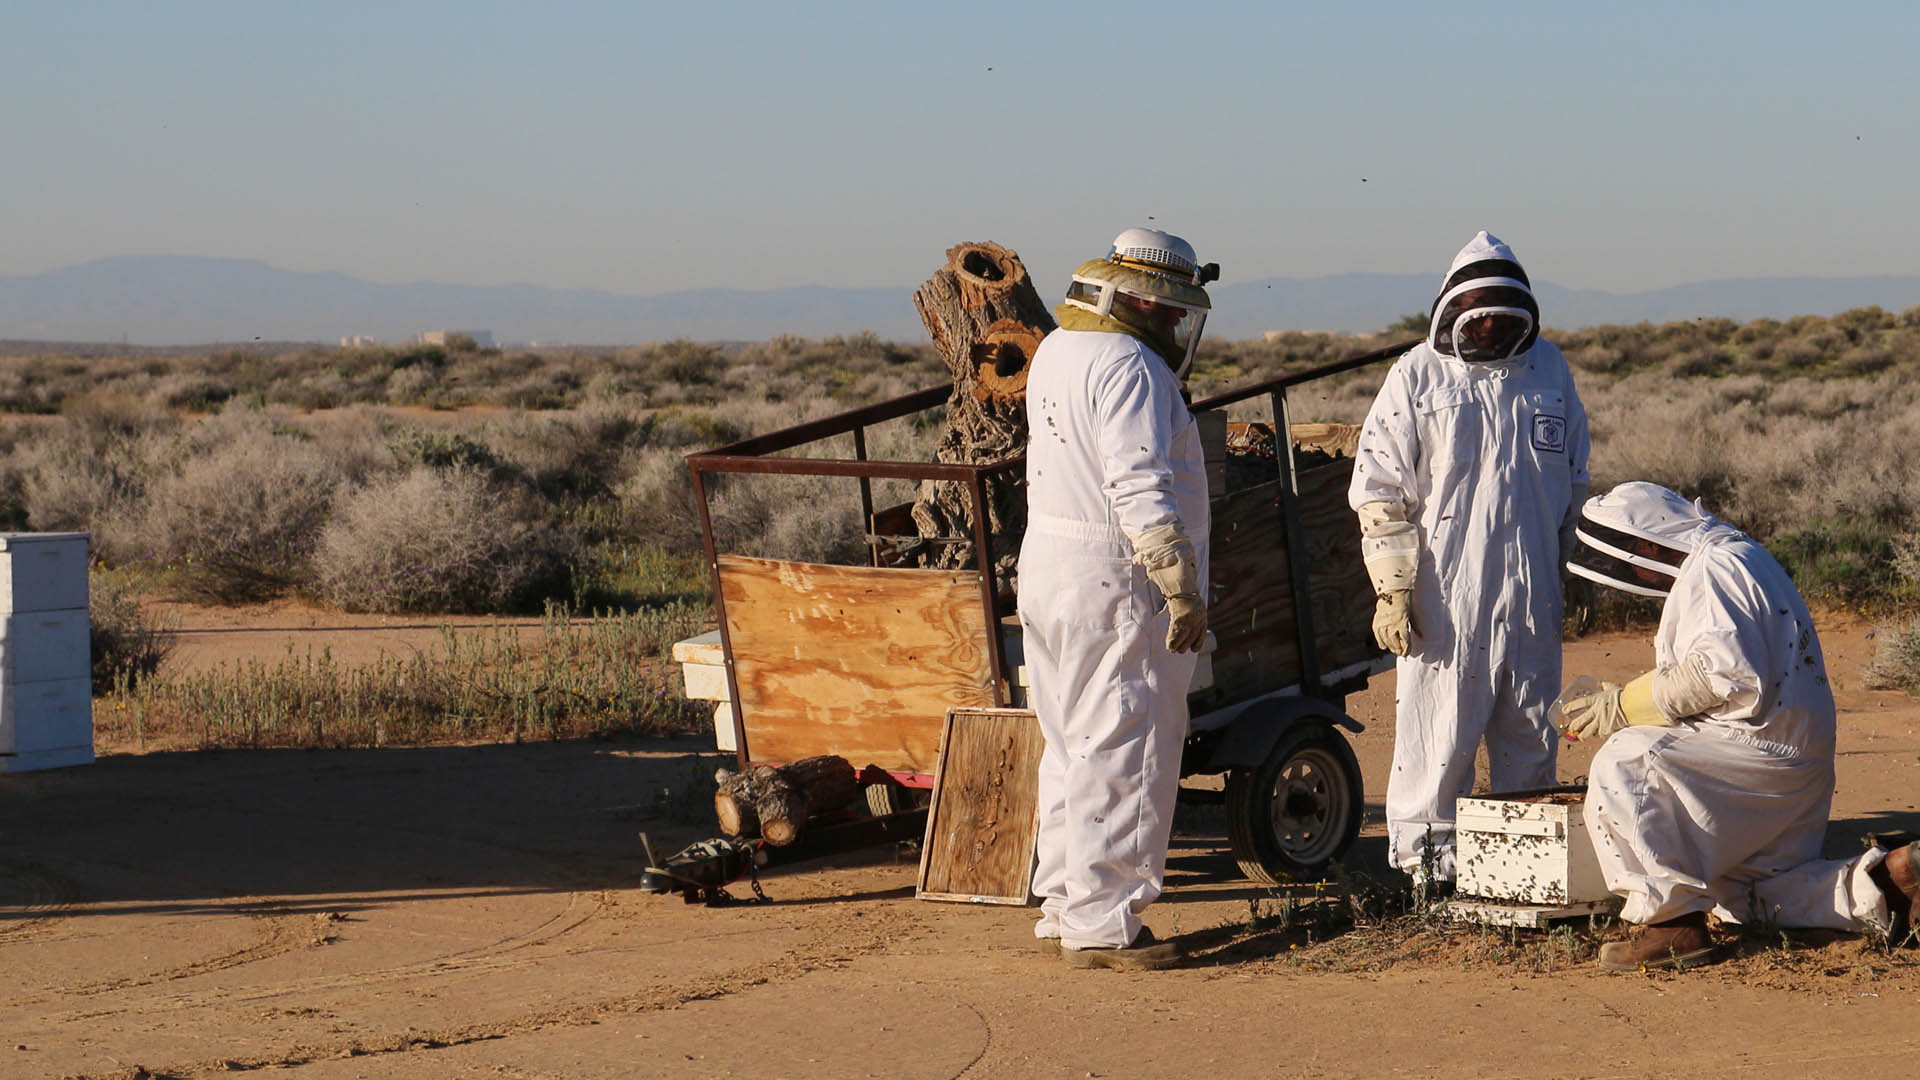 Beekeeping at Boron operations